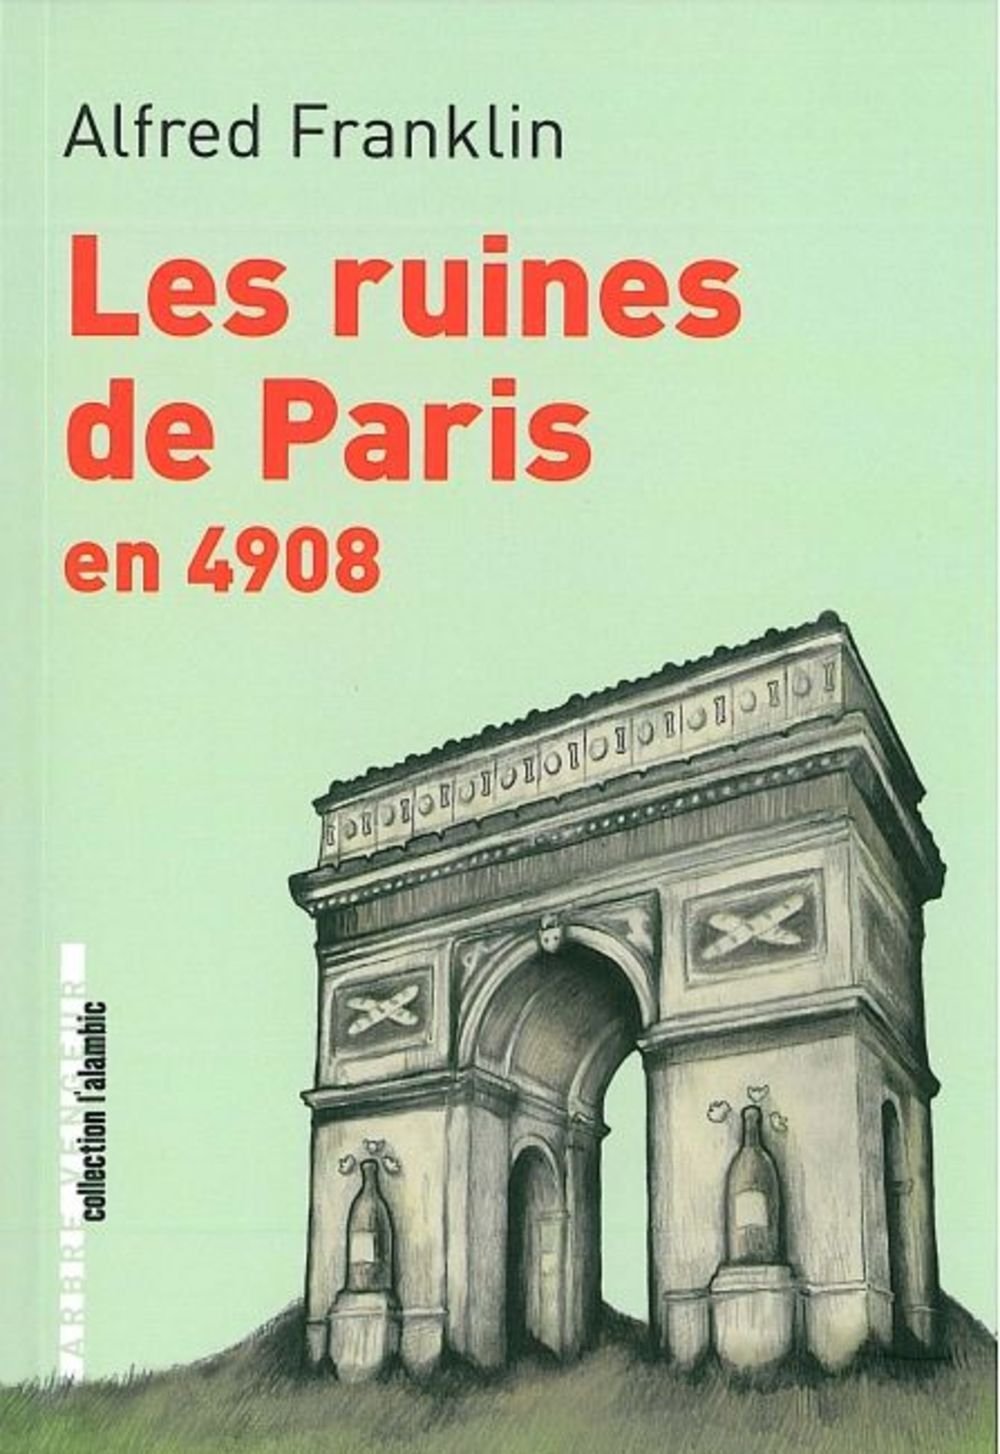 « Les Ruines de Paris en 4908 », d’Alfred Franklin